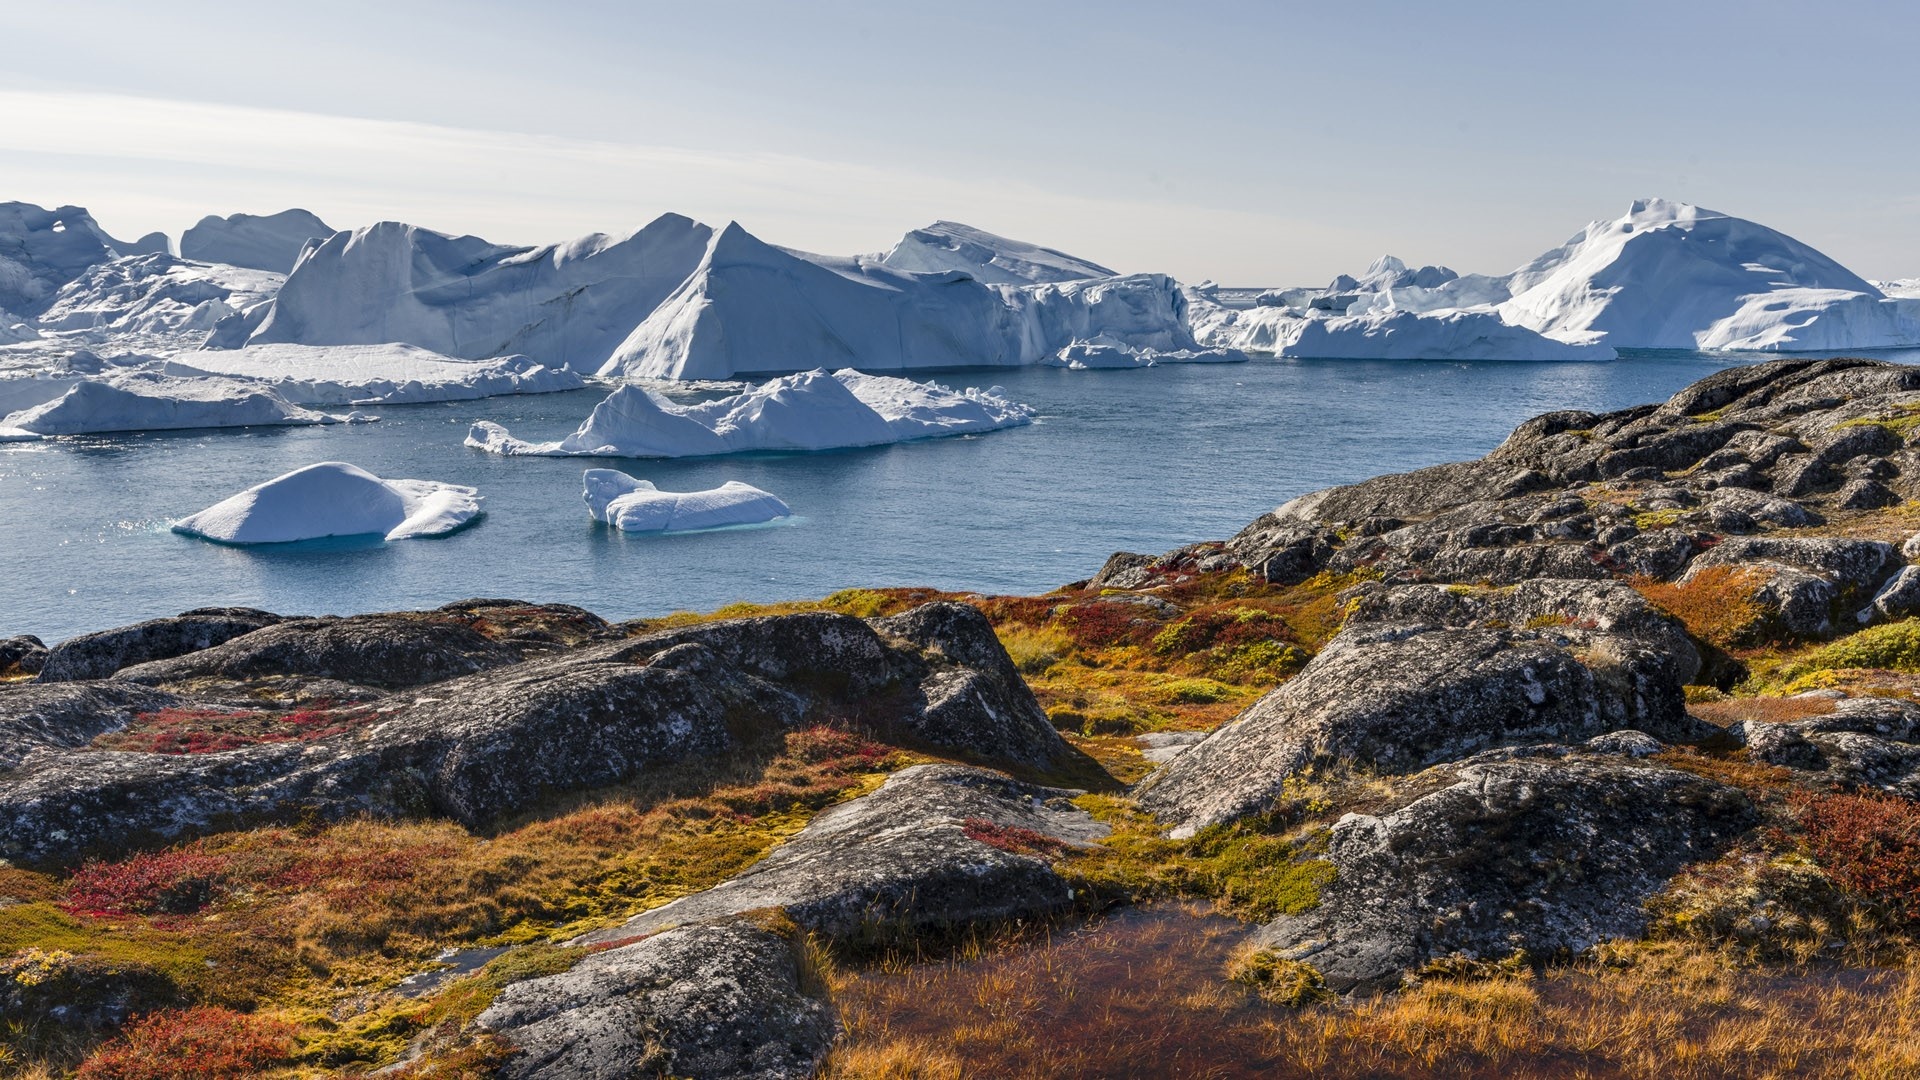 Greenland: Ilulissat Icefjord (Ilulissat Kangerlua) at Disko Bay in autumn. 1920x1080 Full HD Background.